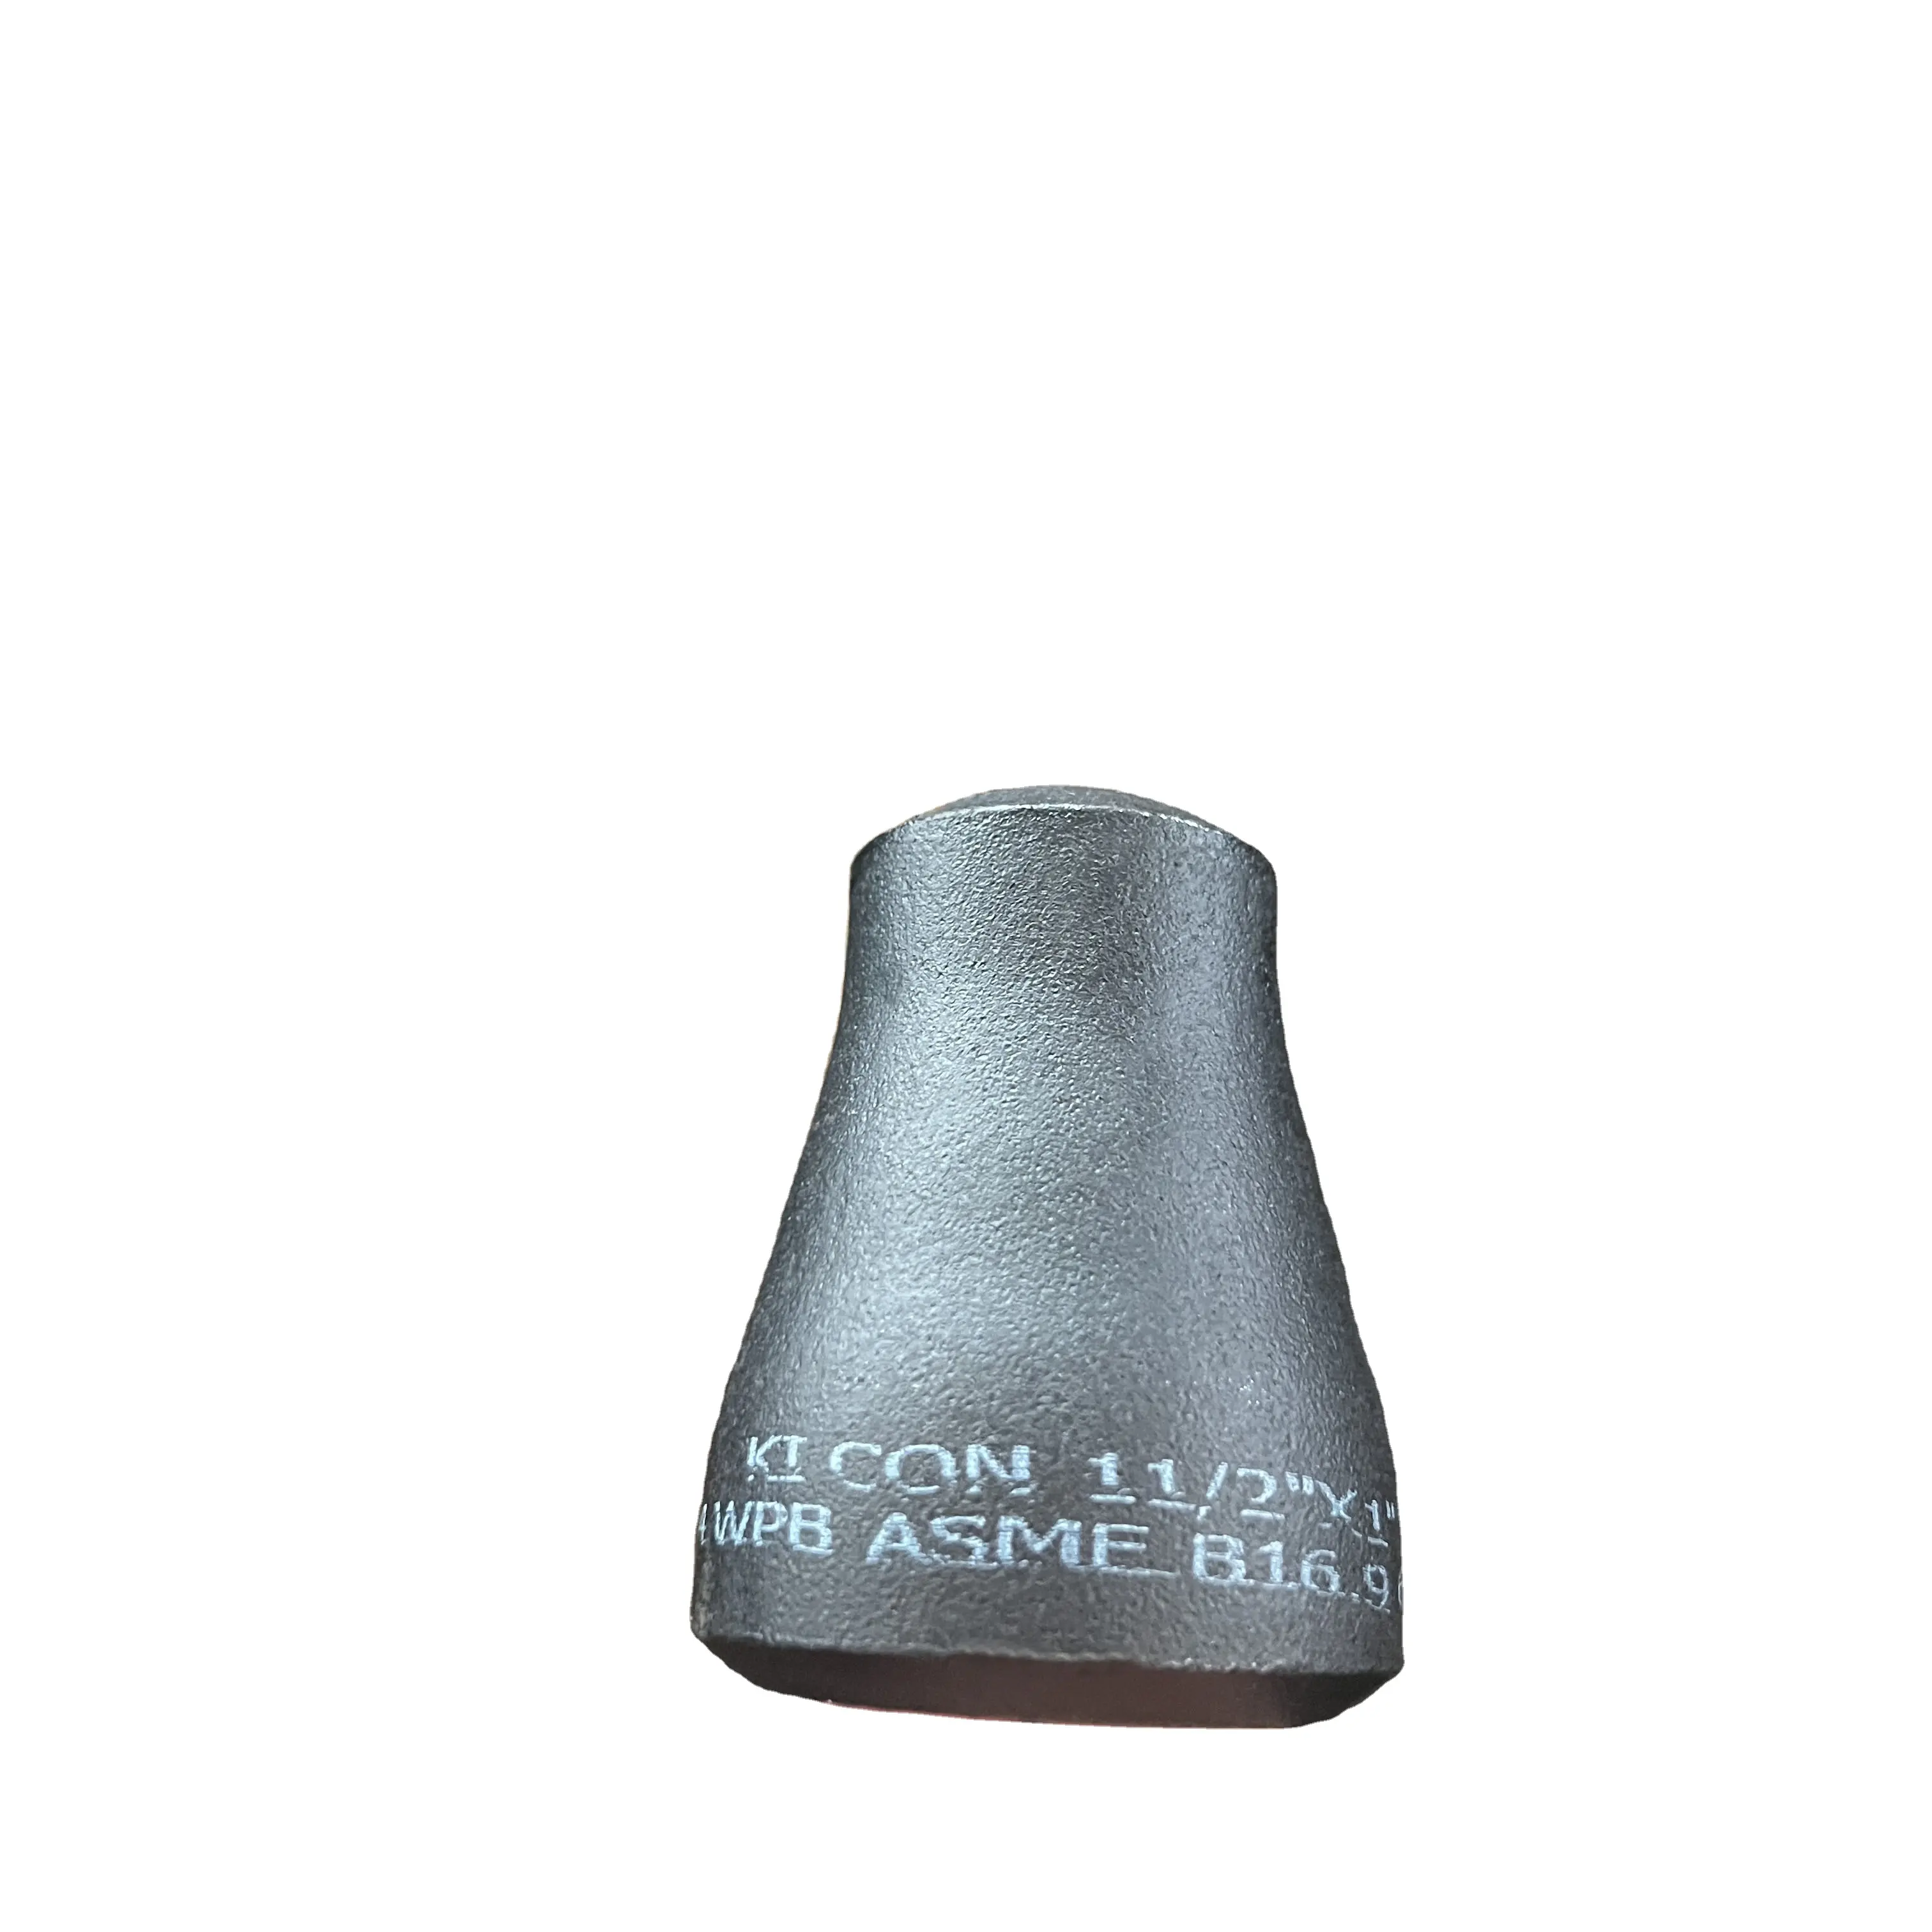 ASTM A234 WPB Seamless sch5 sch10 sch20 Reducer Carbon Steel Butt-Welding Pipe Fitting Con Ecc Reducer